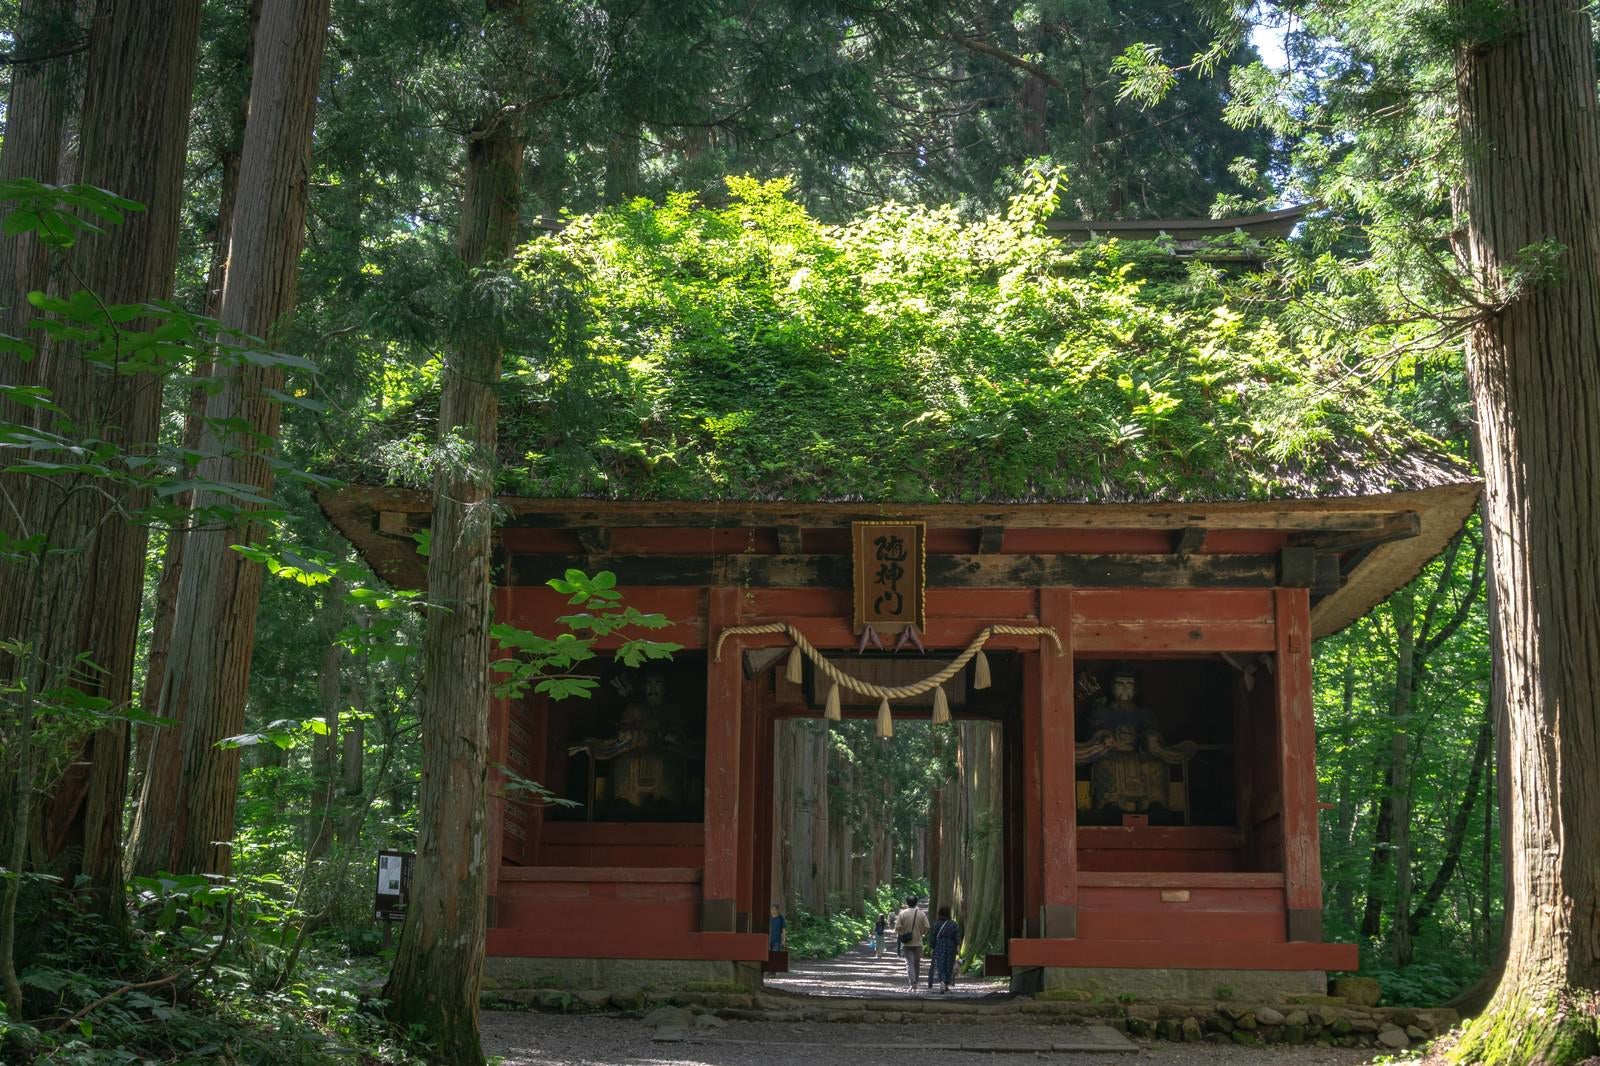 「戸隠神社奥社参道に建つ茅葺屋根の随神門」の写真